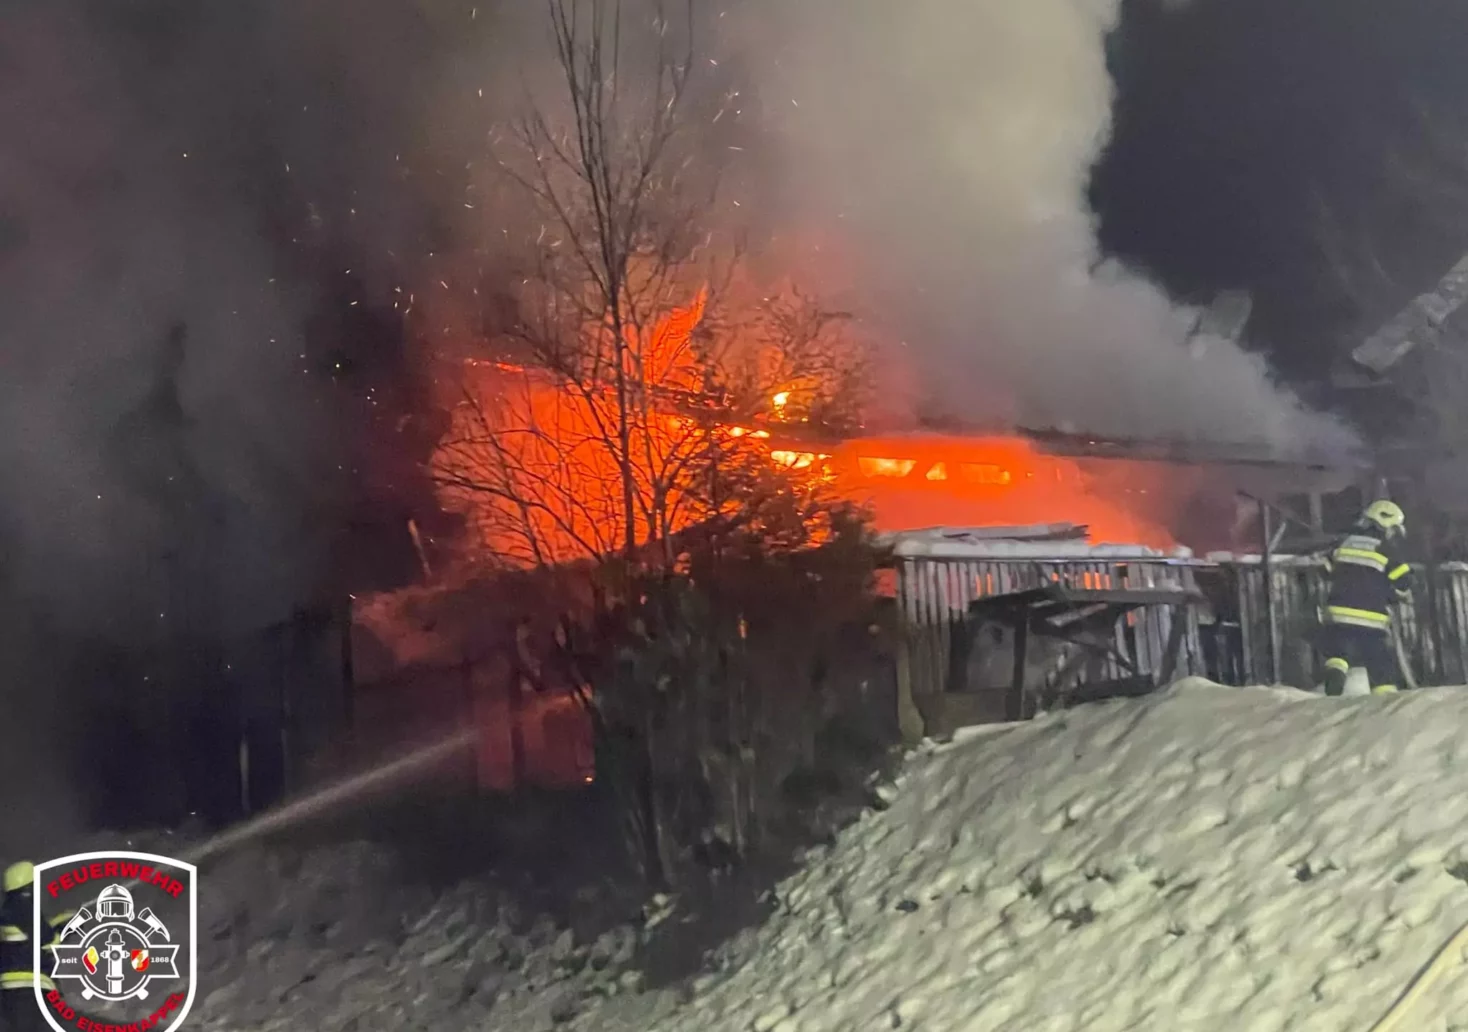 Foto in Beitrag von 5min.at: Zu sehen ist das brennende Haus sehr deutlich, auch starker Rauch ist zu sehen.